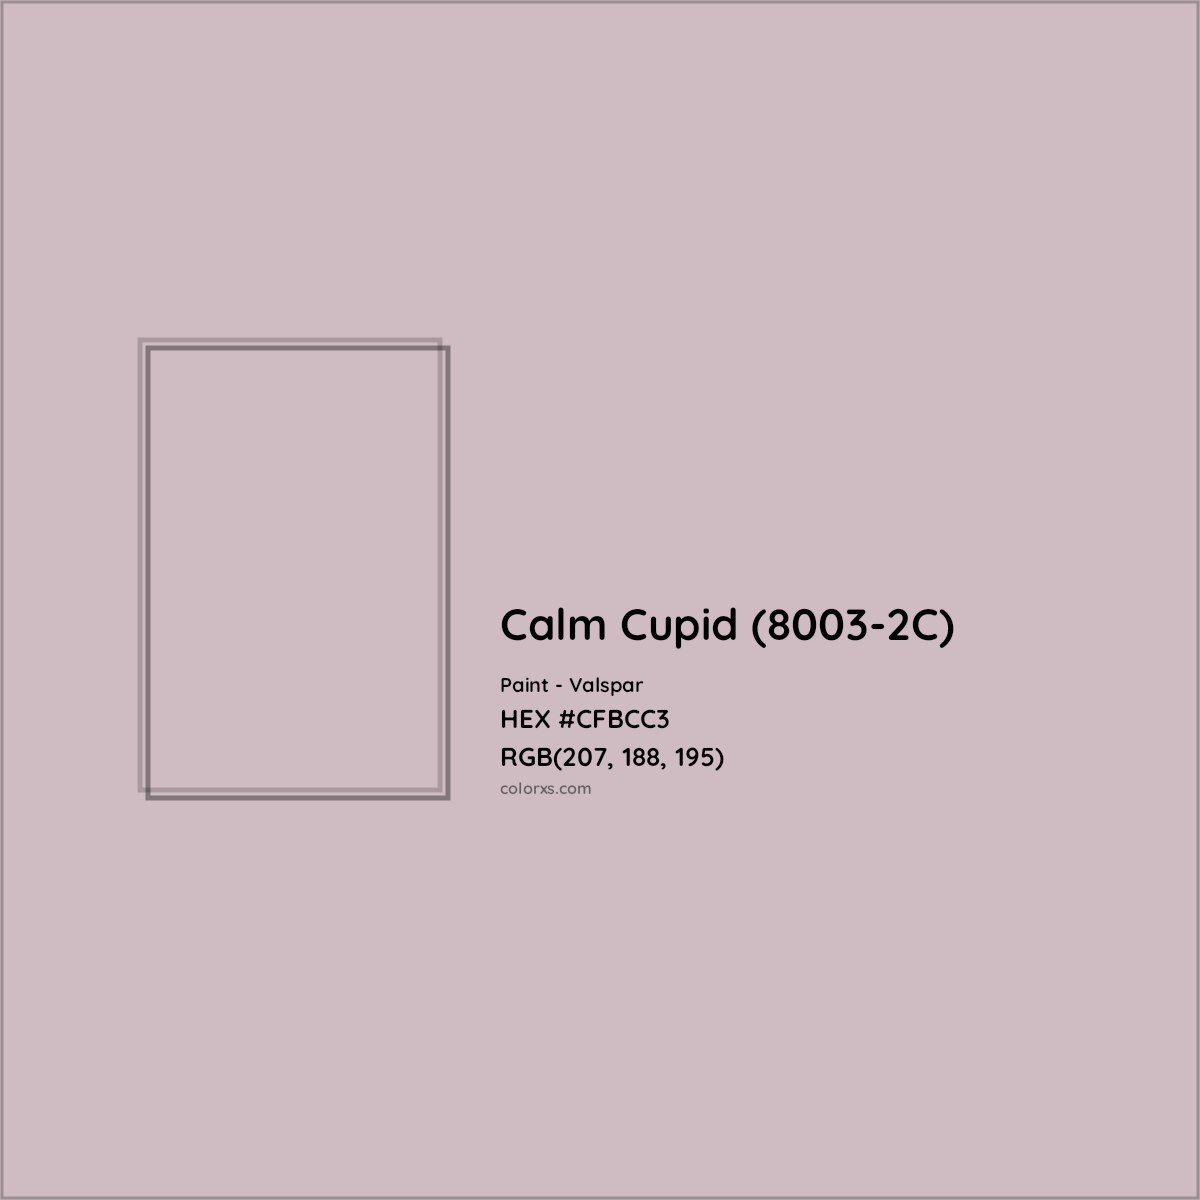 HEX #CFBCC3 Calm Cupid (8003-2C) Paint Valspar - Color Code